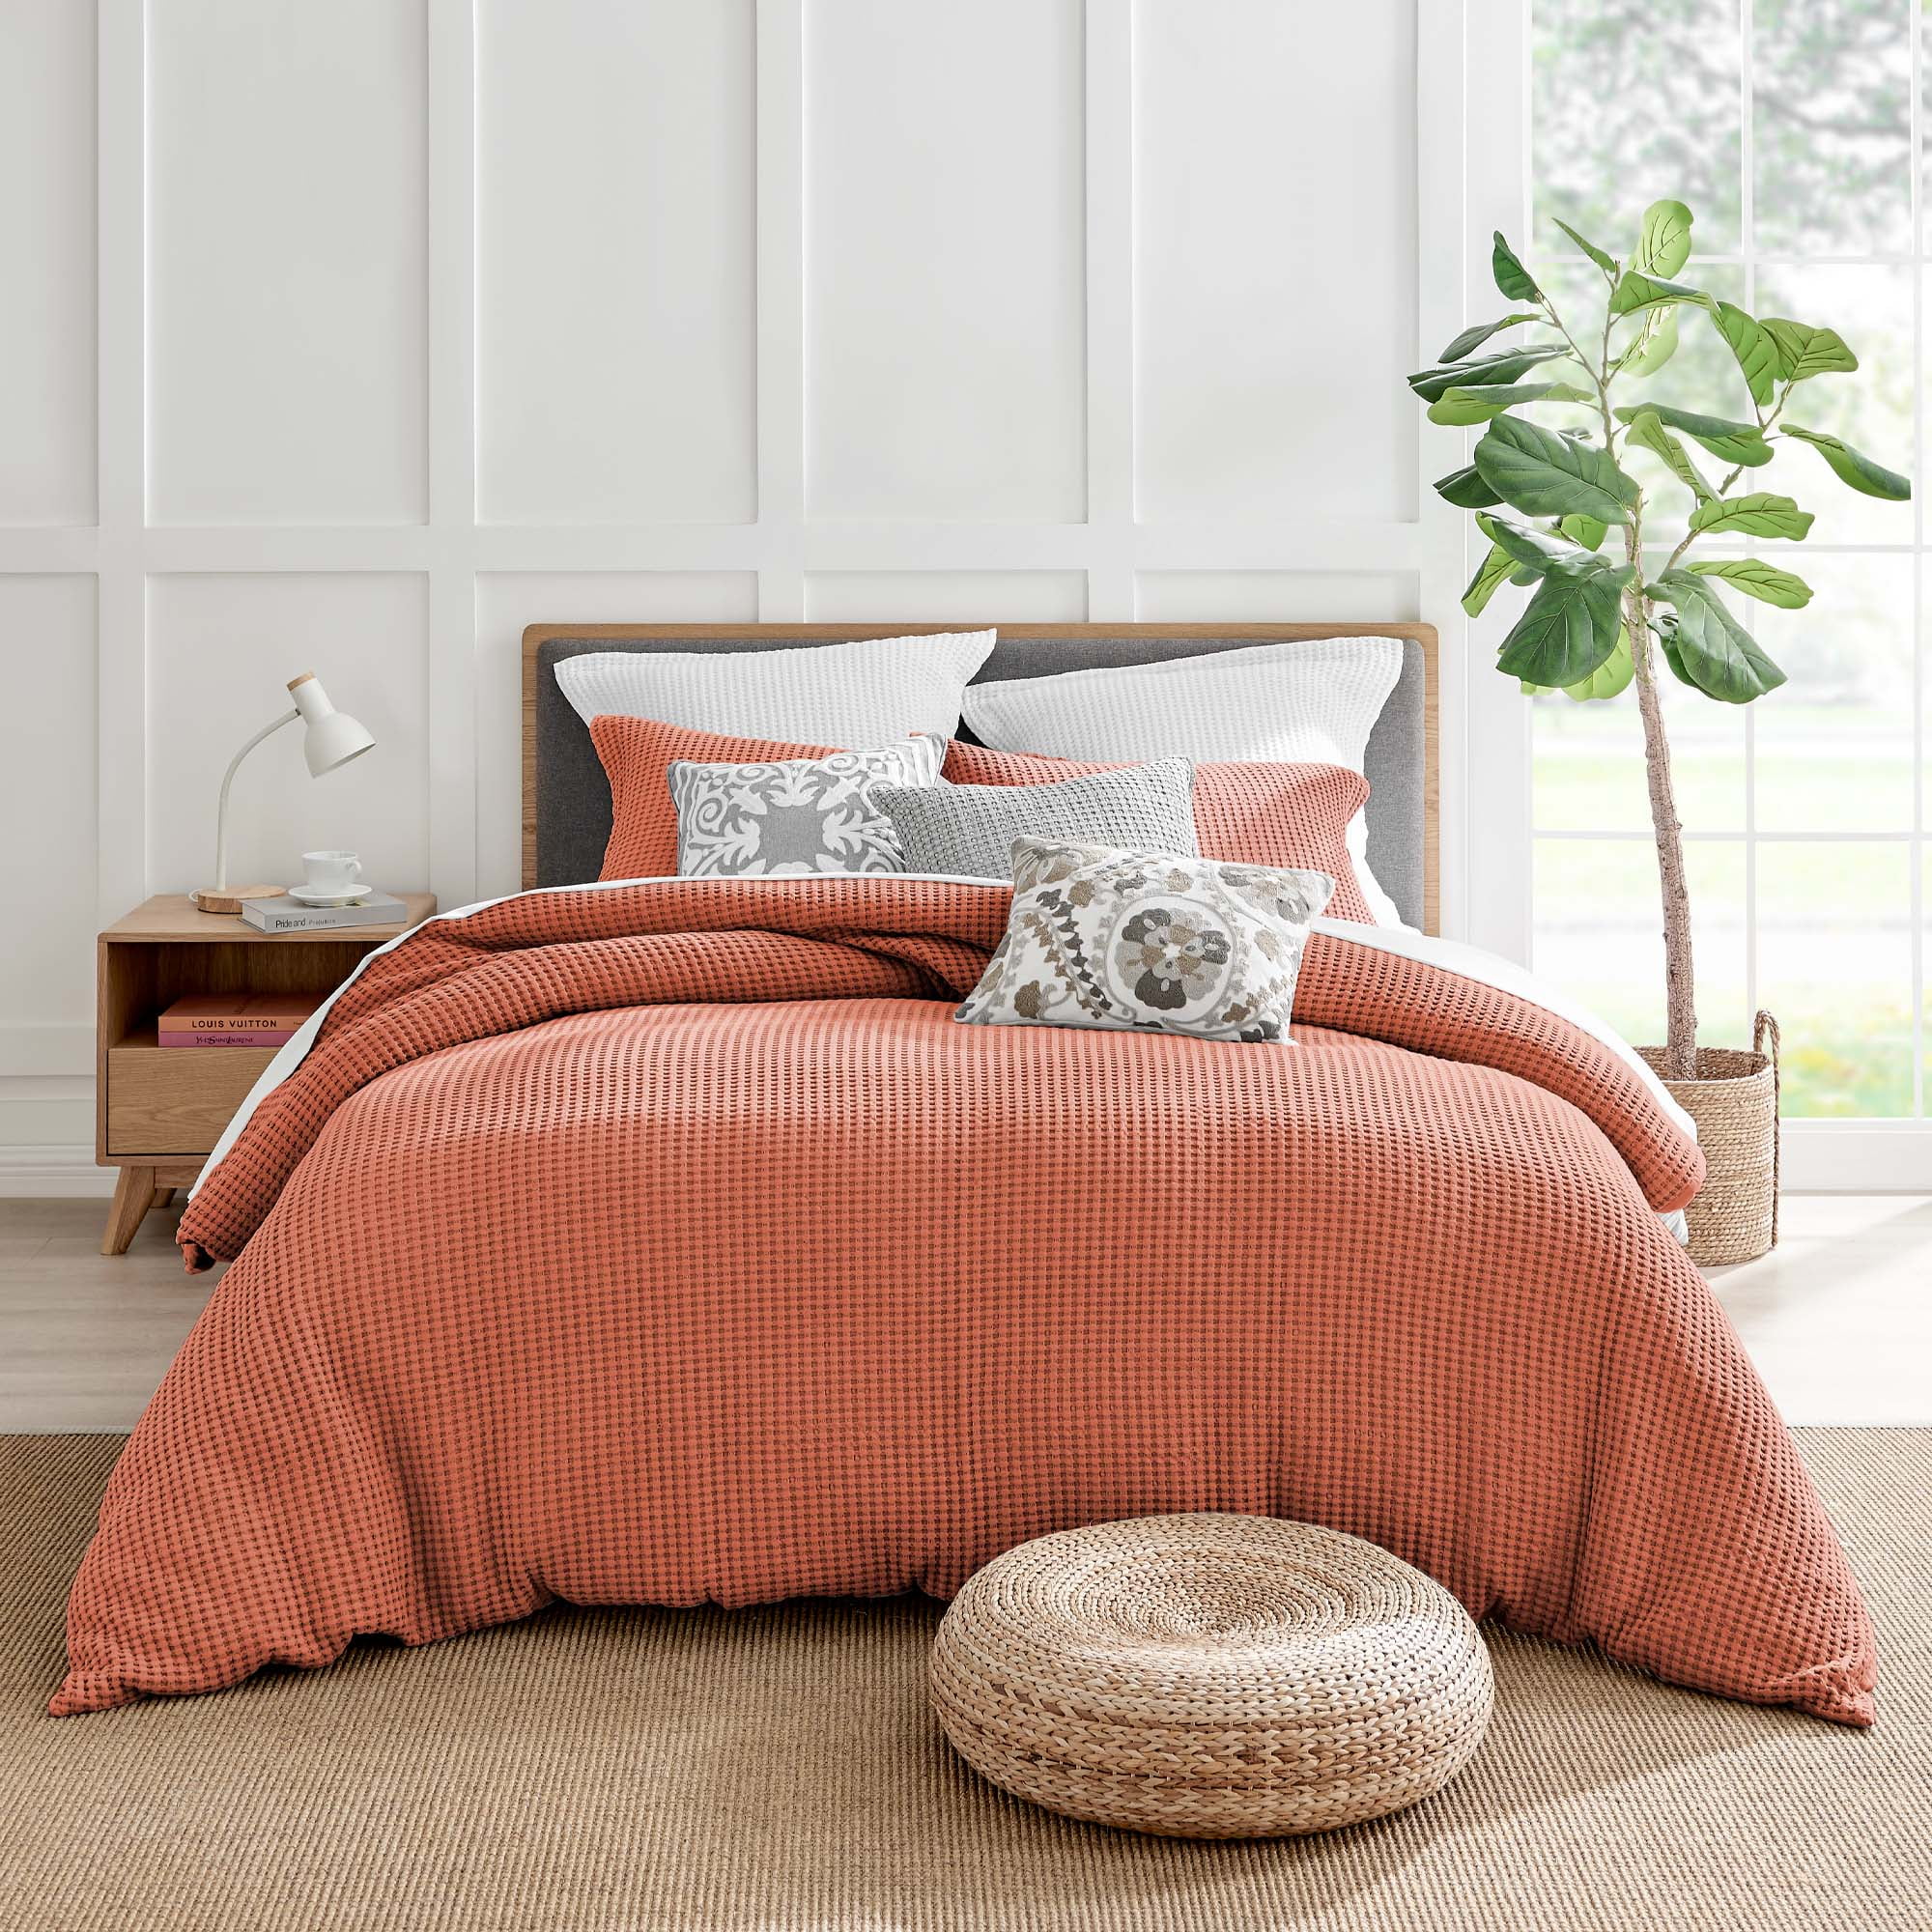 Buy Louis Vuitton Bedding Sets Bed Sets, Bedroom Sets, Comforter